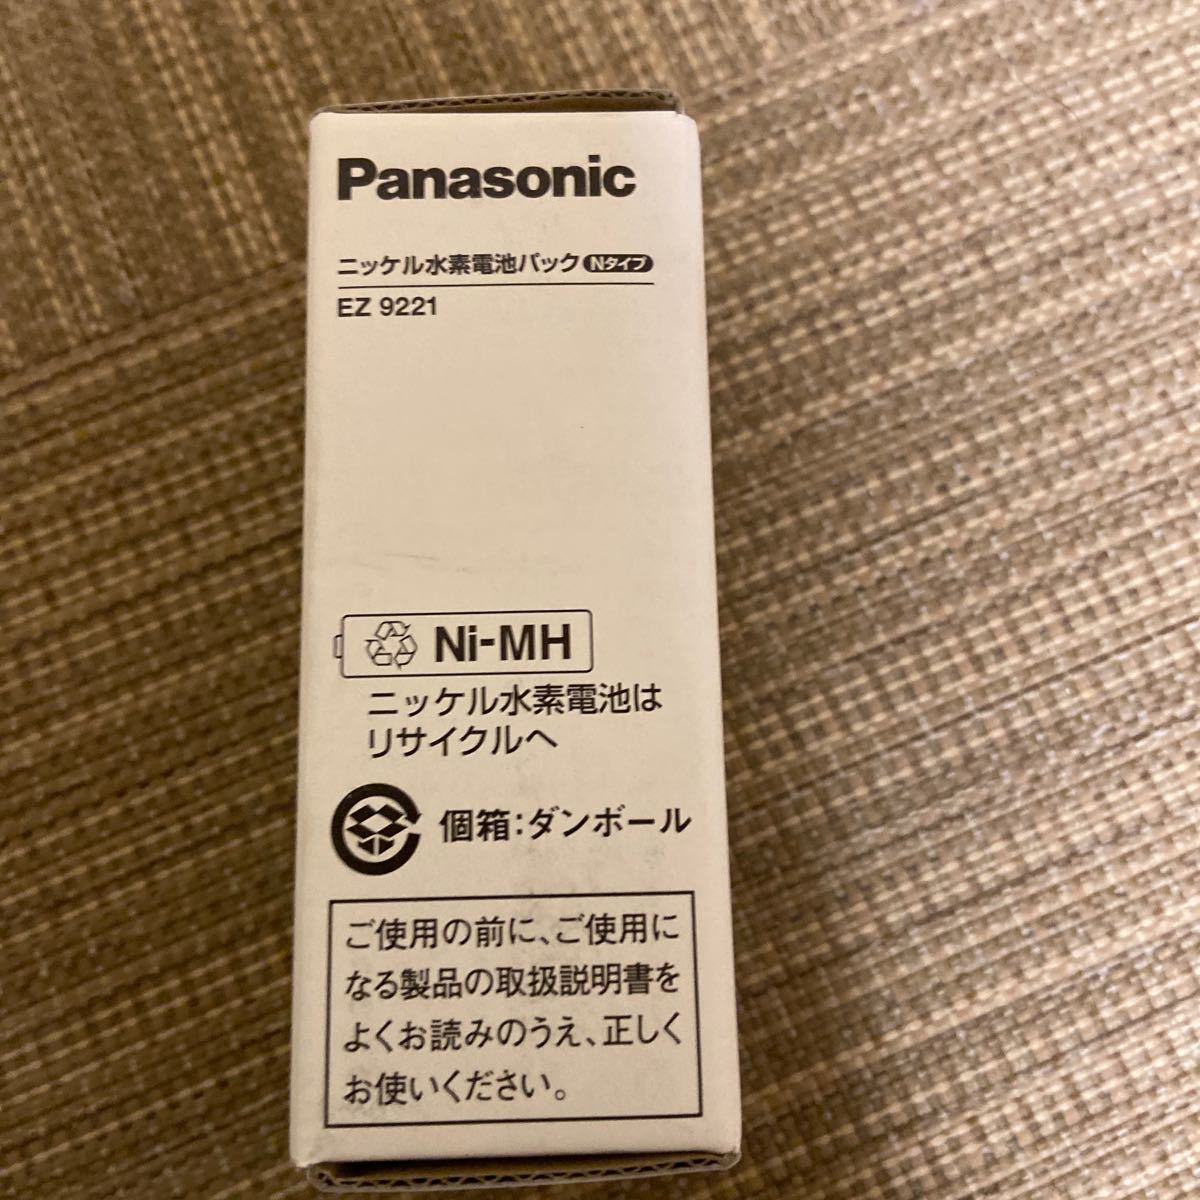  Panasonic Nickel-Metal Hydride battery pack 2.4V N type EZ9221 (61-2502-49)